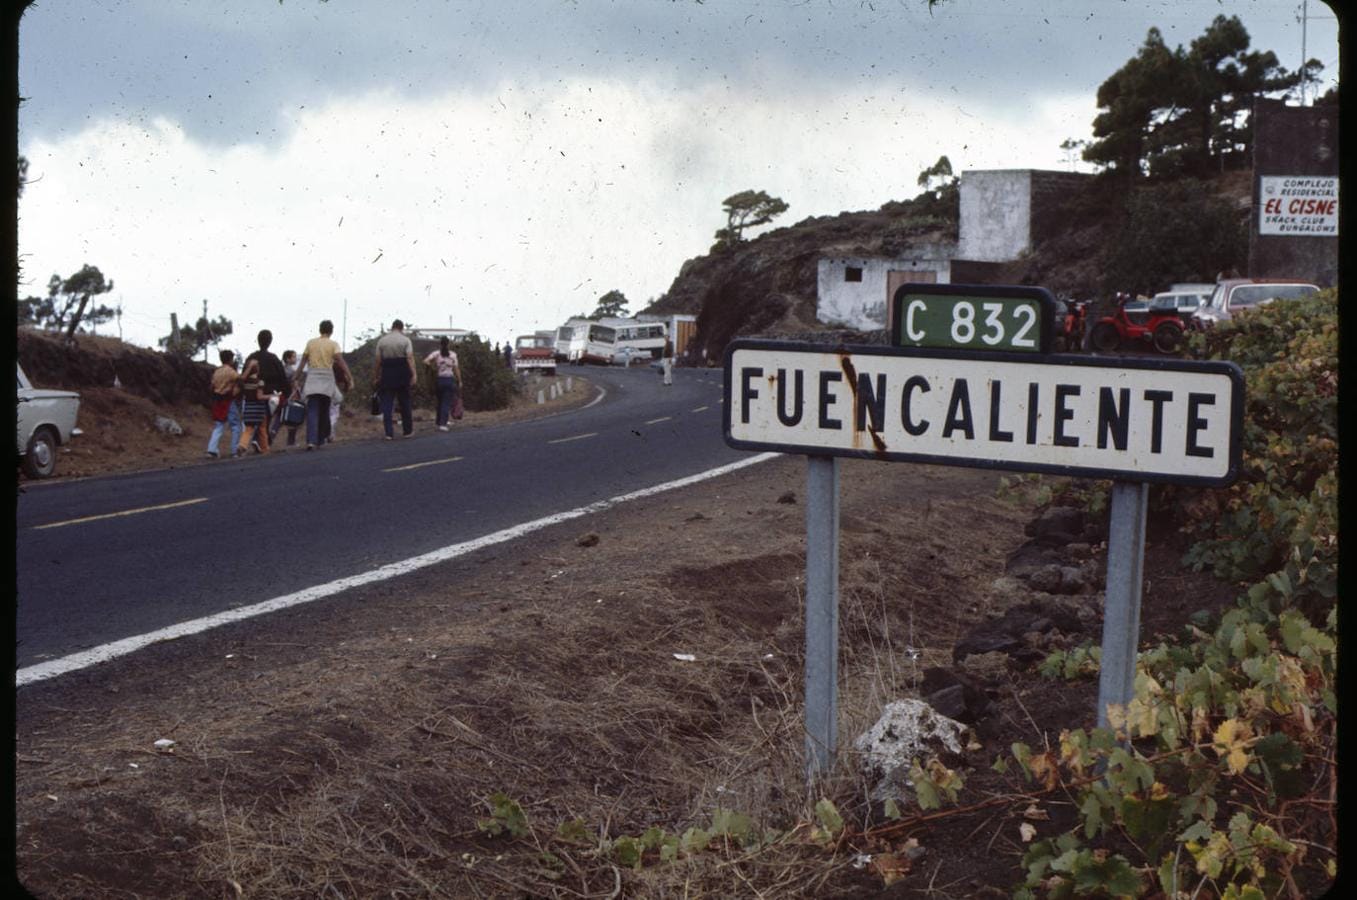 El 20 de octubre de 1971, una vecina de Fuencaliente manifestó haber percibido un temblor de la tierra, con movimiento de algunos enseres de su hogar y vibración de cristales. 